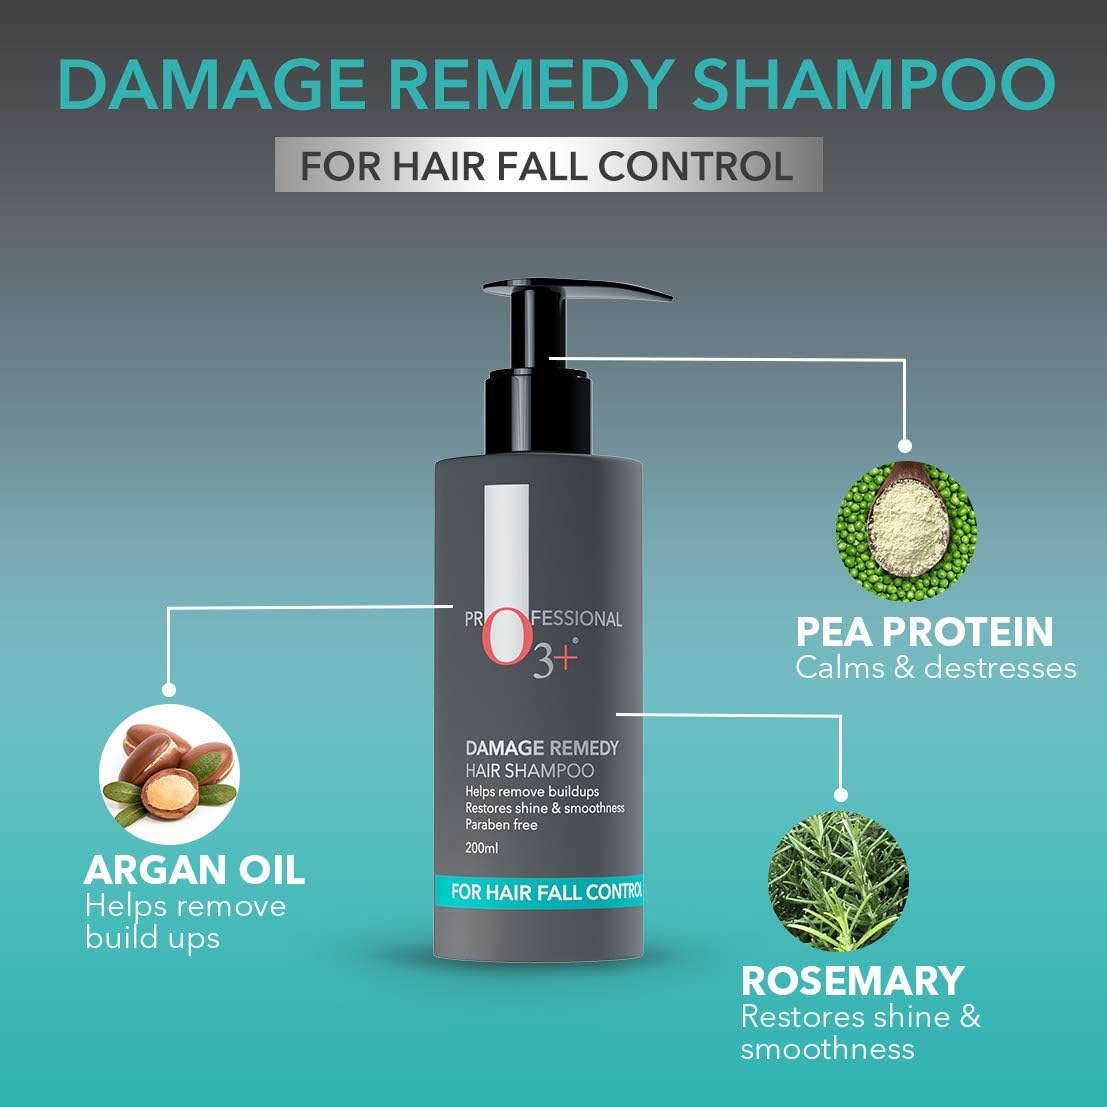 O3+ Professional Damage Remedy Hair Shampoo - 200 ml